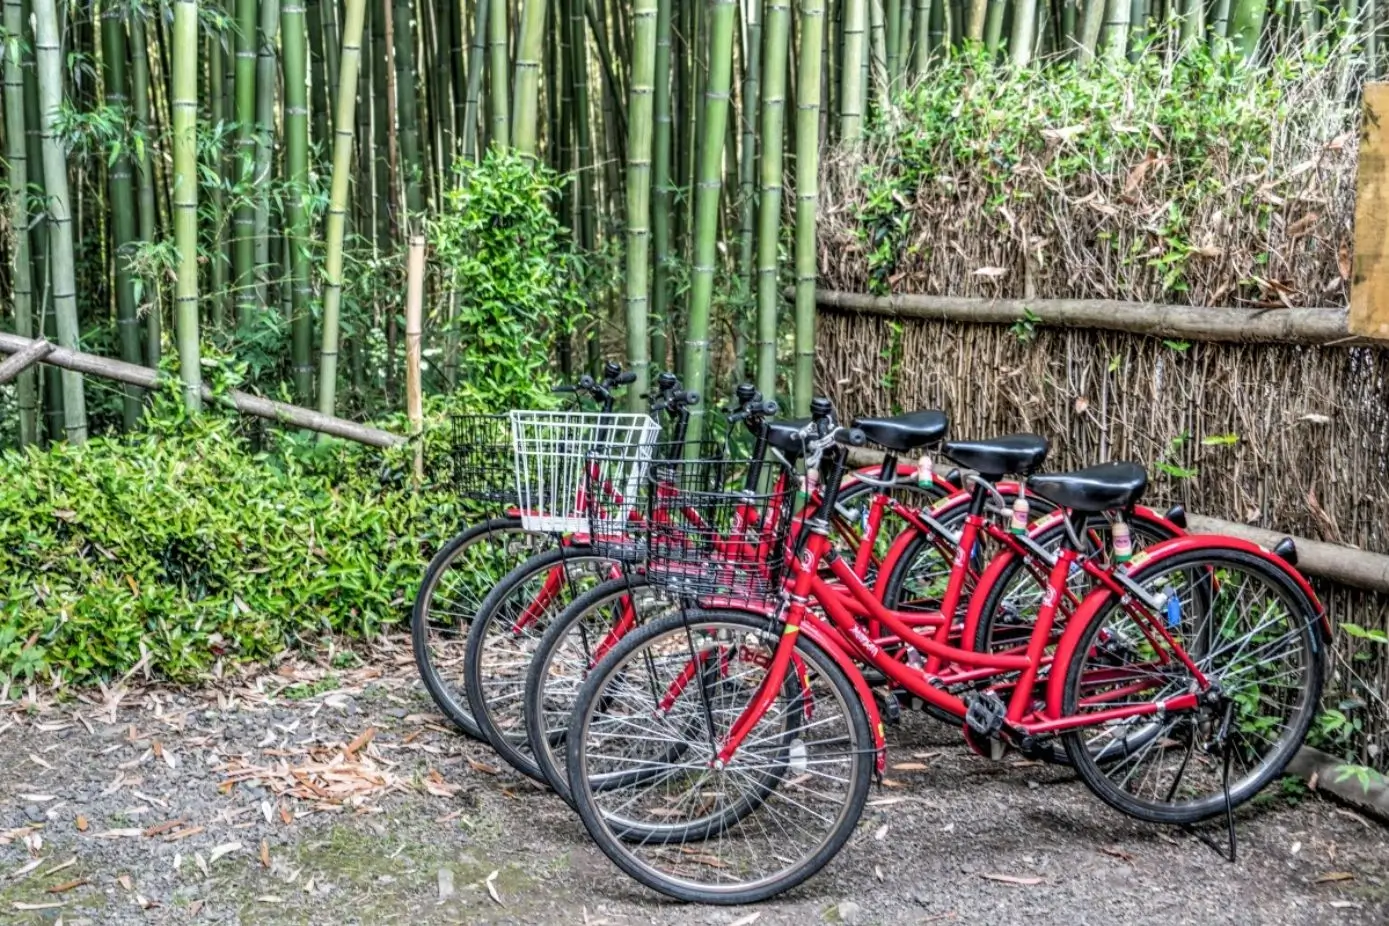 Japanese Public Transportation - Bicycle